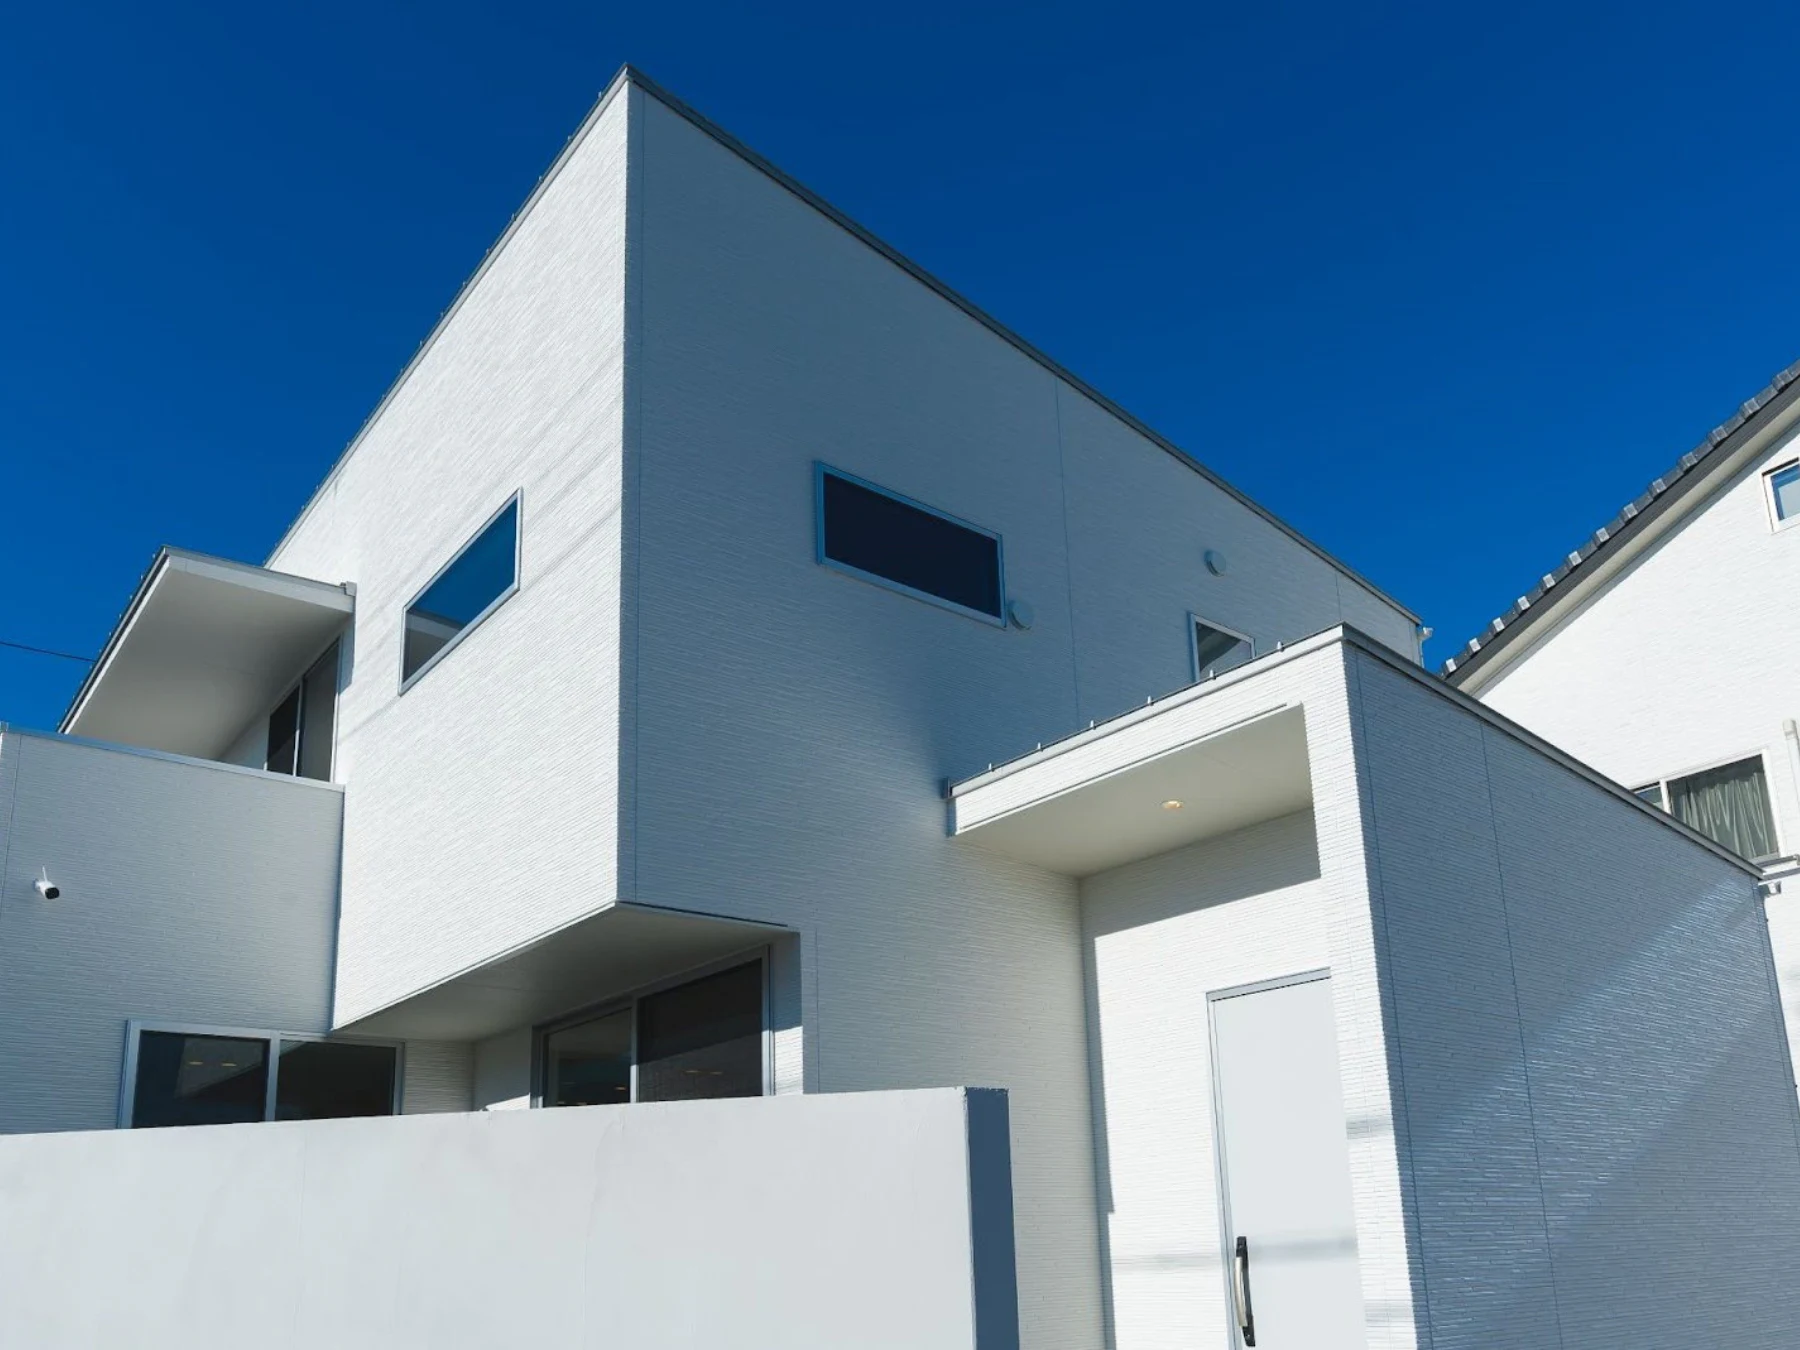 耐震等級の認定を取得した建売住宅を選ぶ5つのメリット